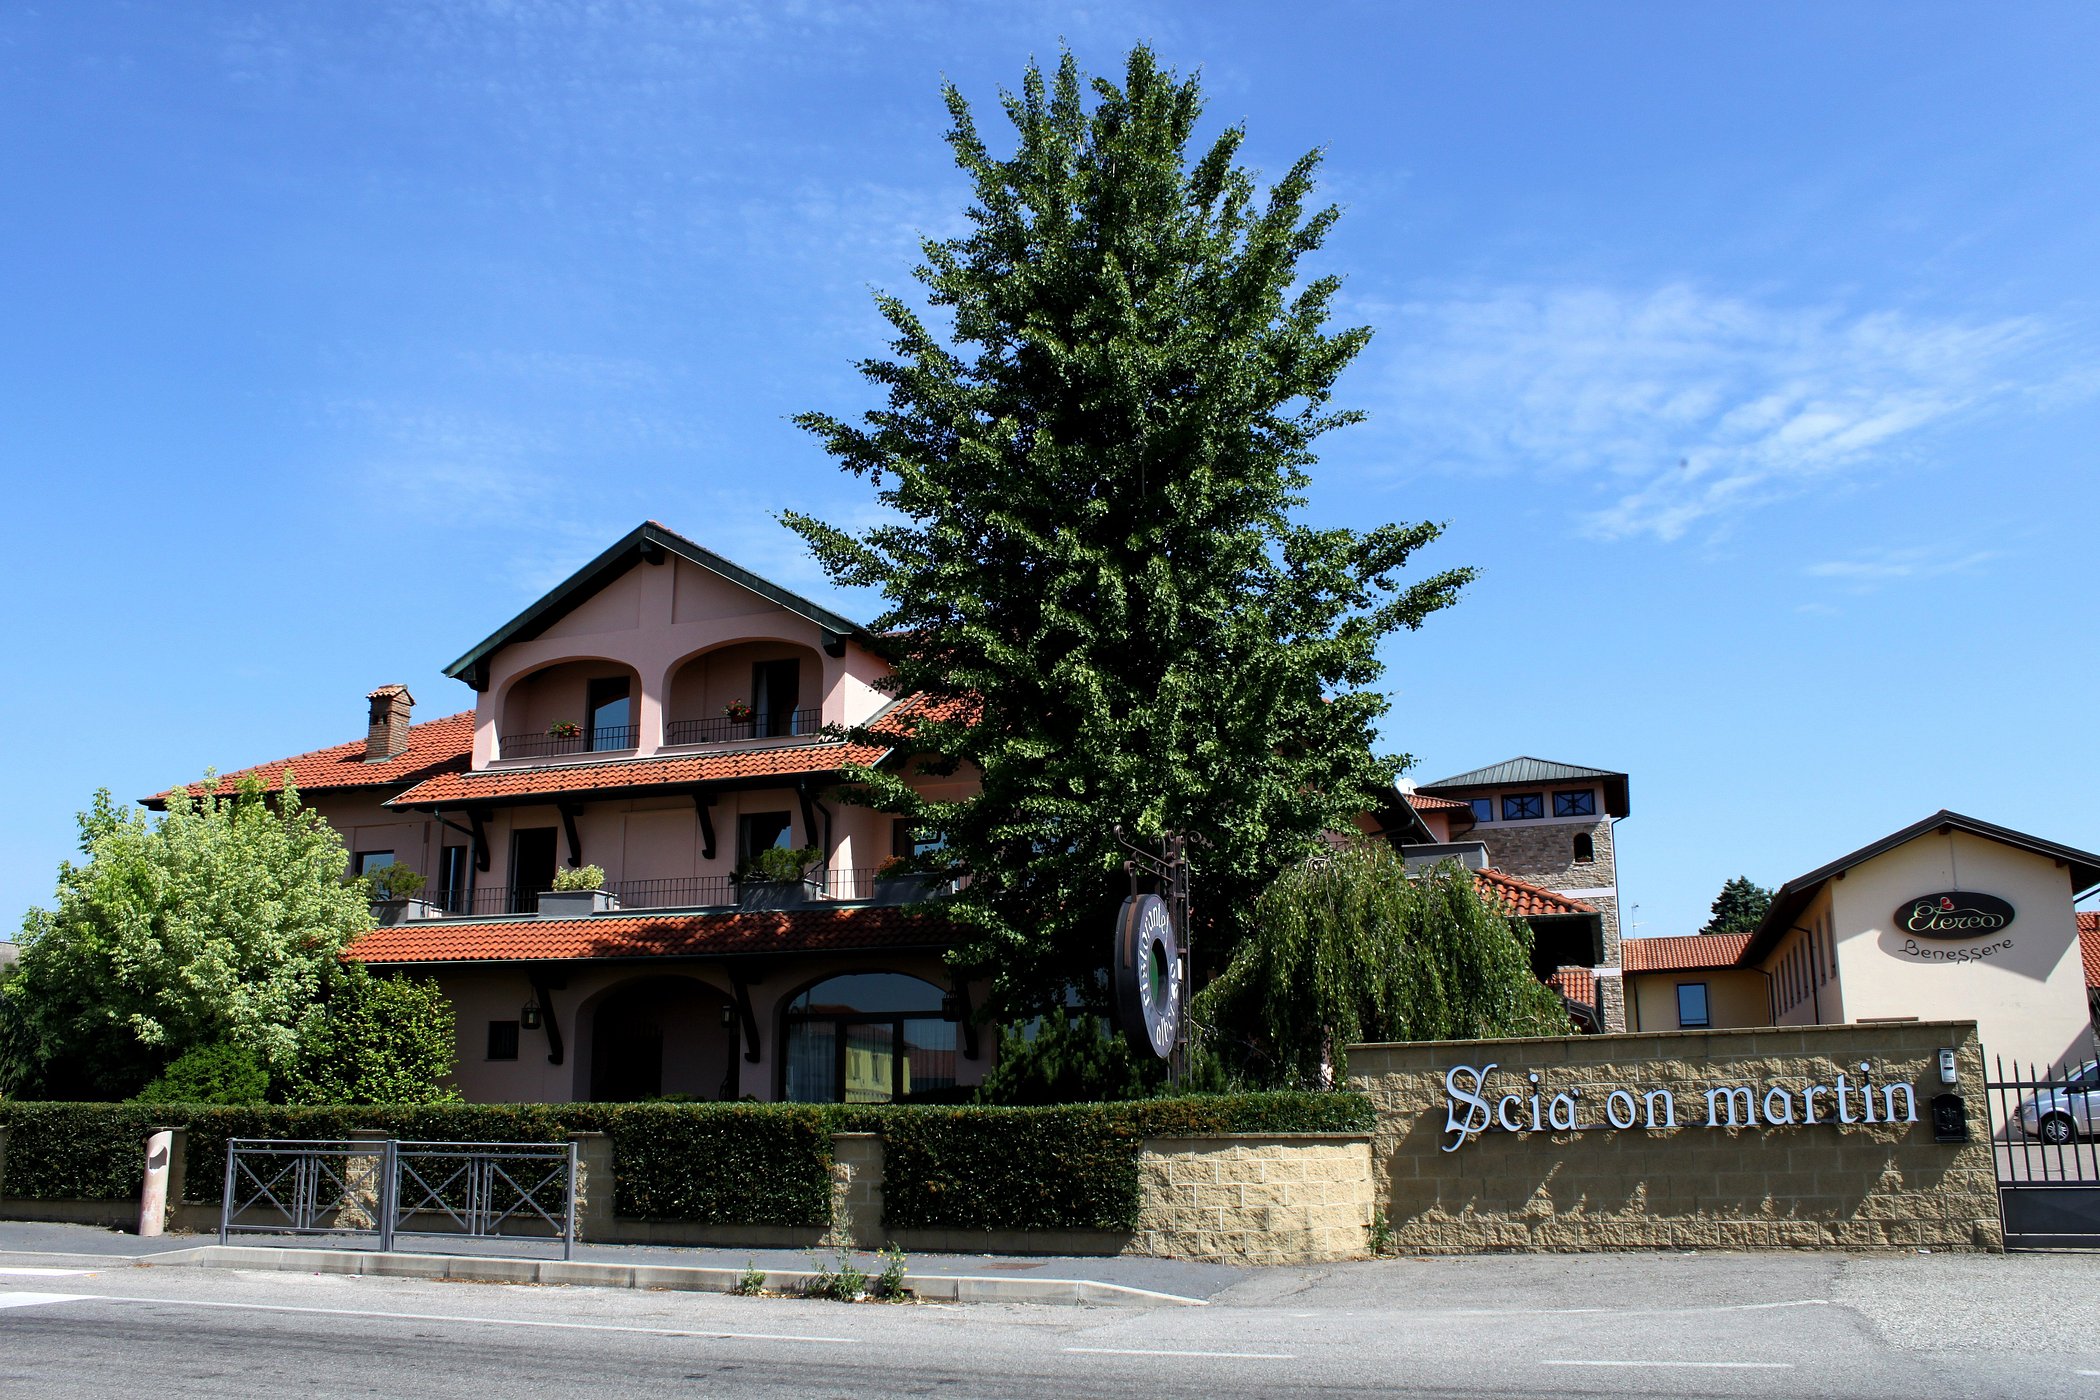 Hotel Ristorante Scià on Martin image